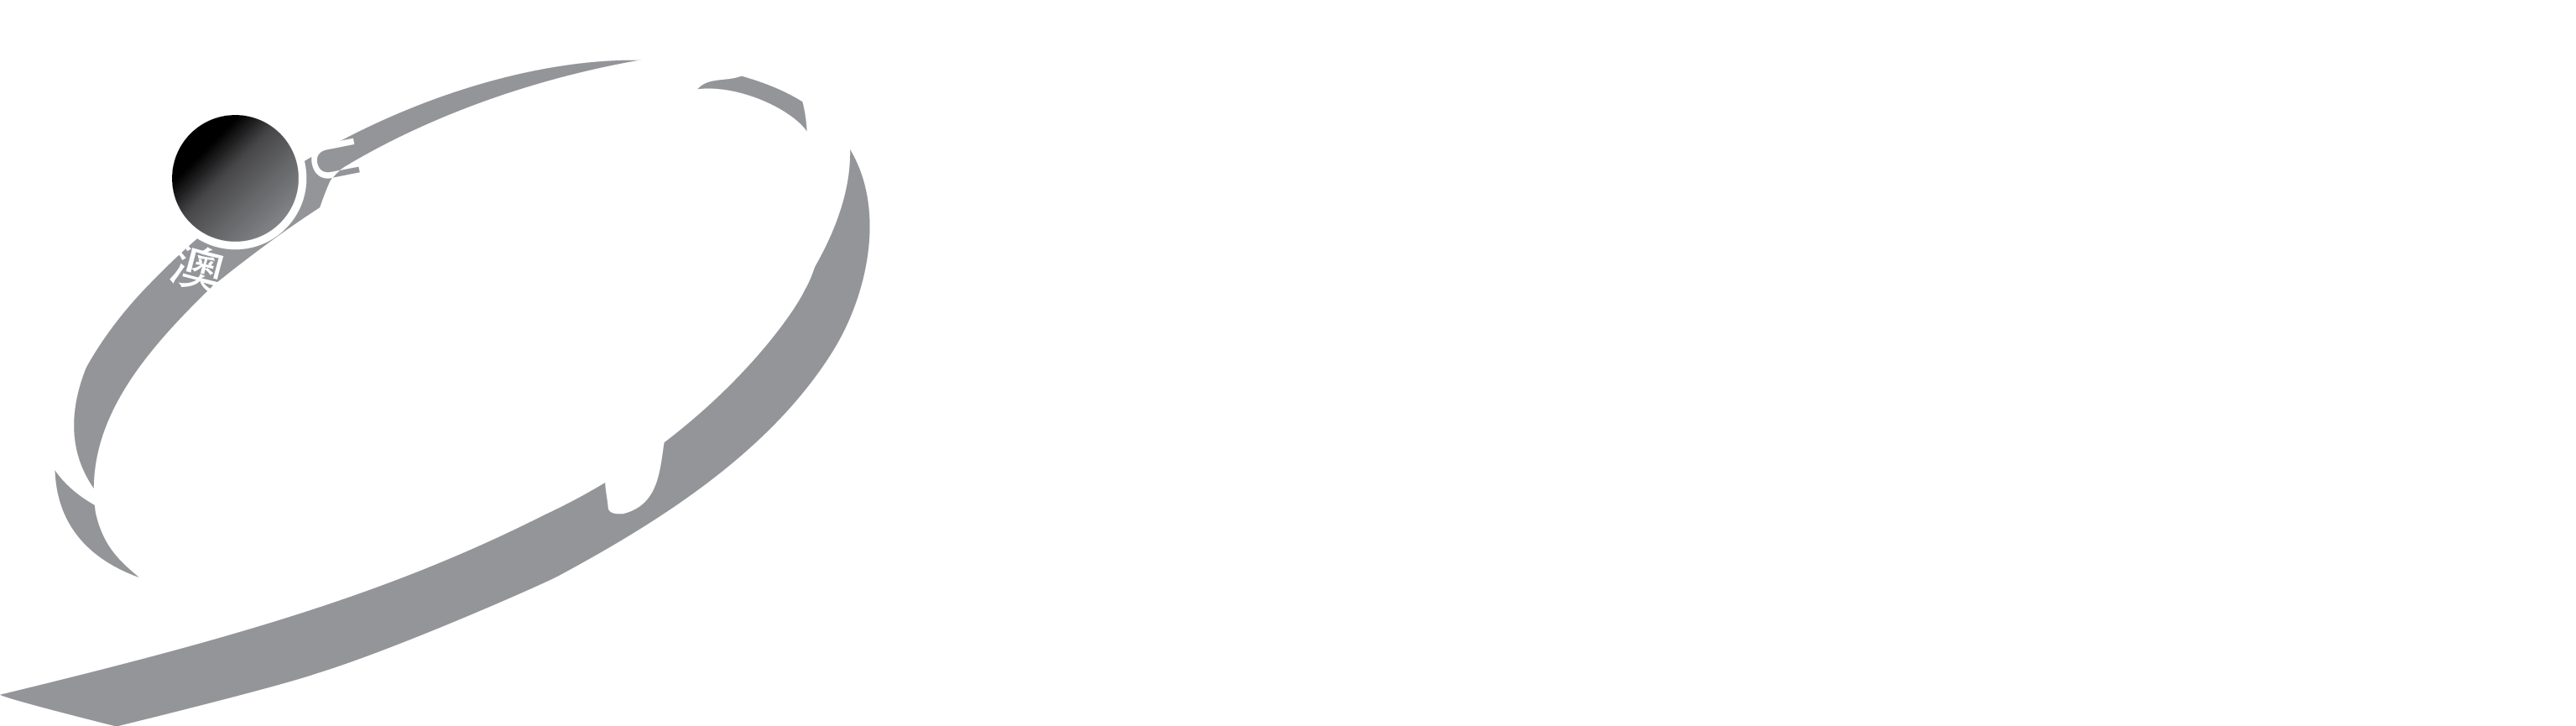 IFT_logo